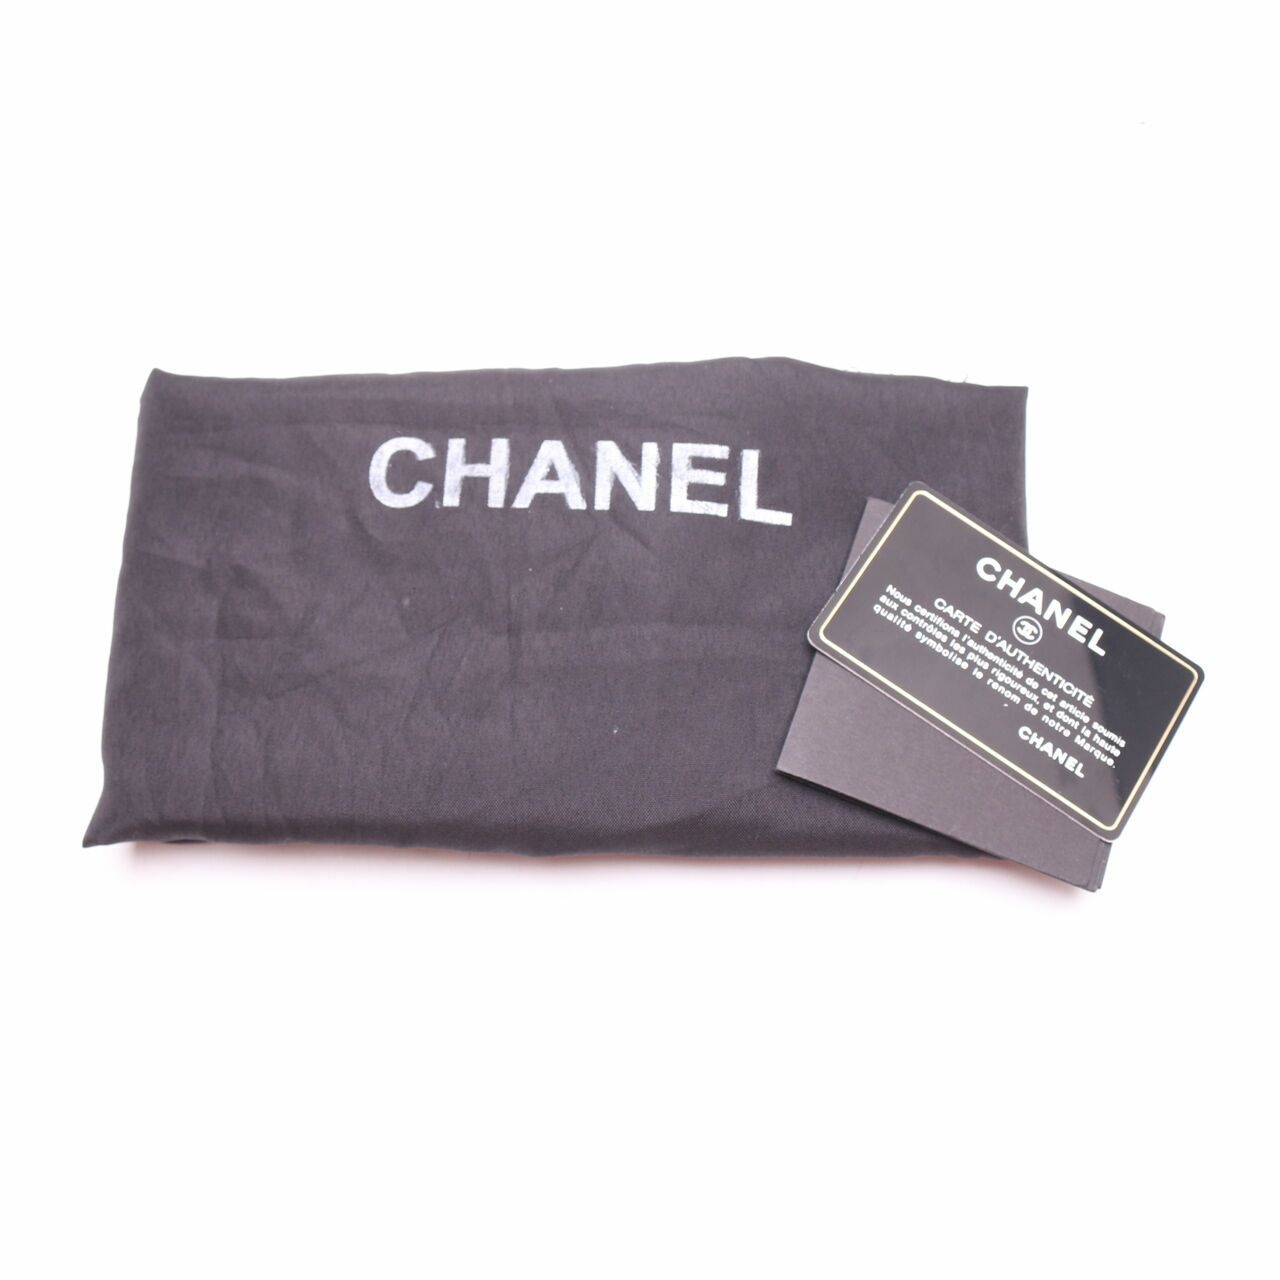 Chanel  Limited Edition Gold on Gold Shoulder Bag